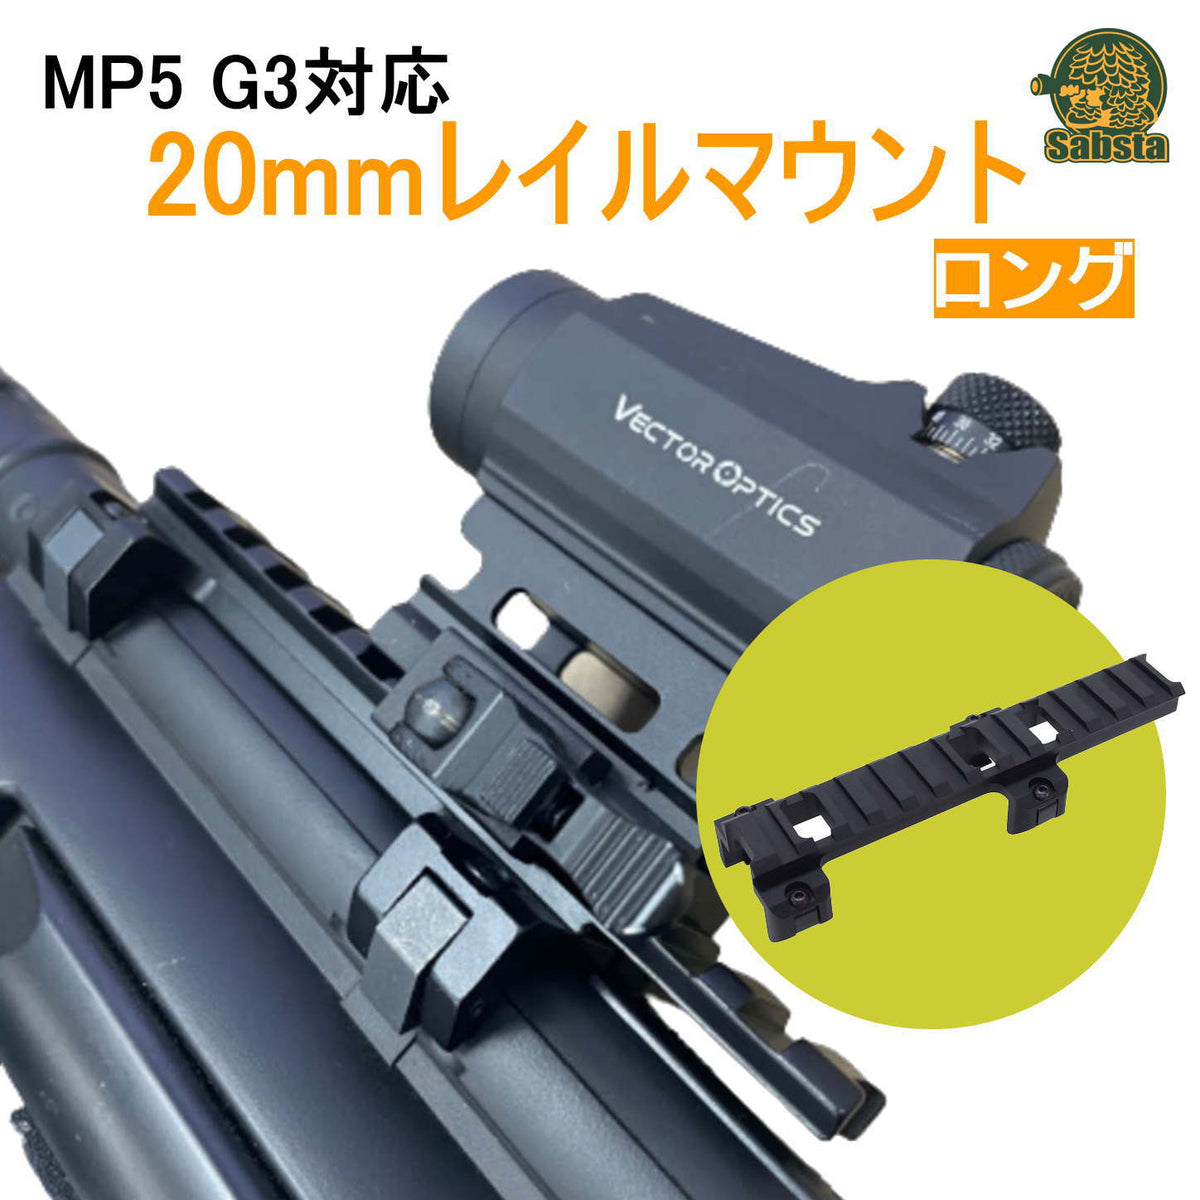 【送料無料/即日発送】MP5 G3対応 20mmレイルマウント アルミ